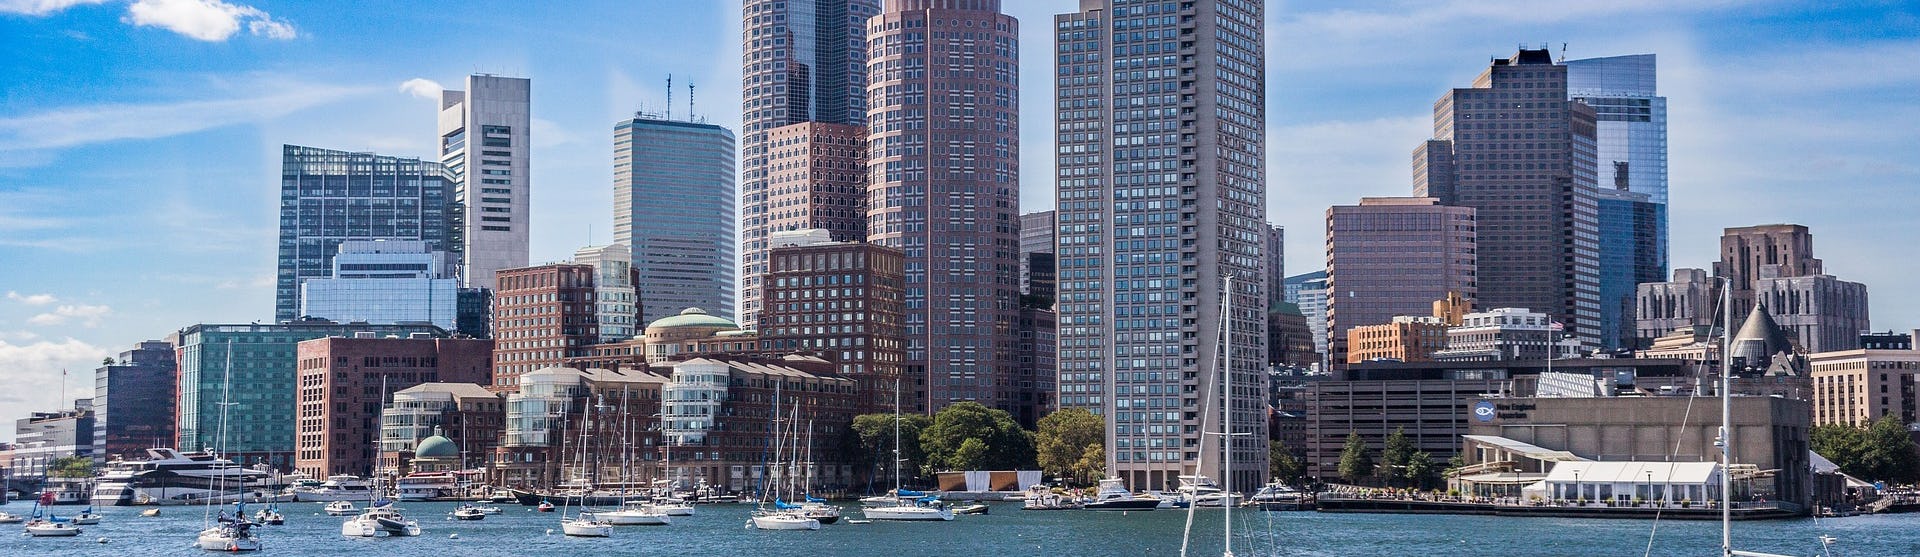 Bild på Bostons skyline med havet framför och flera segelbåtar.